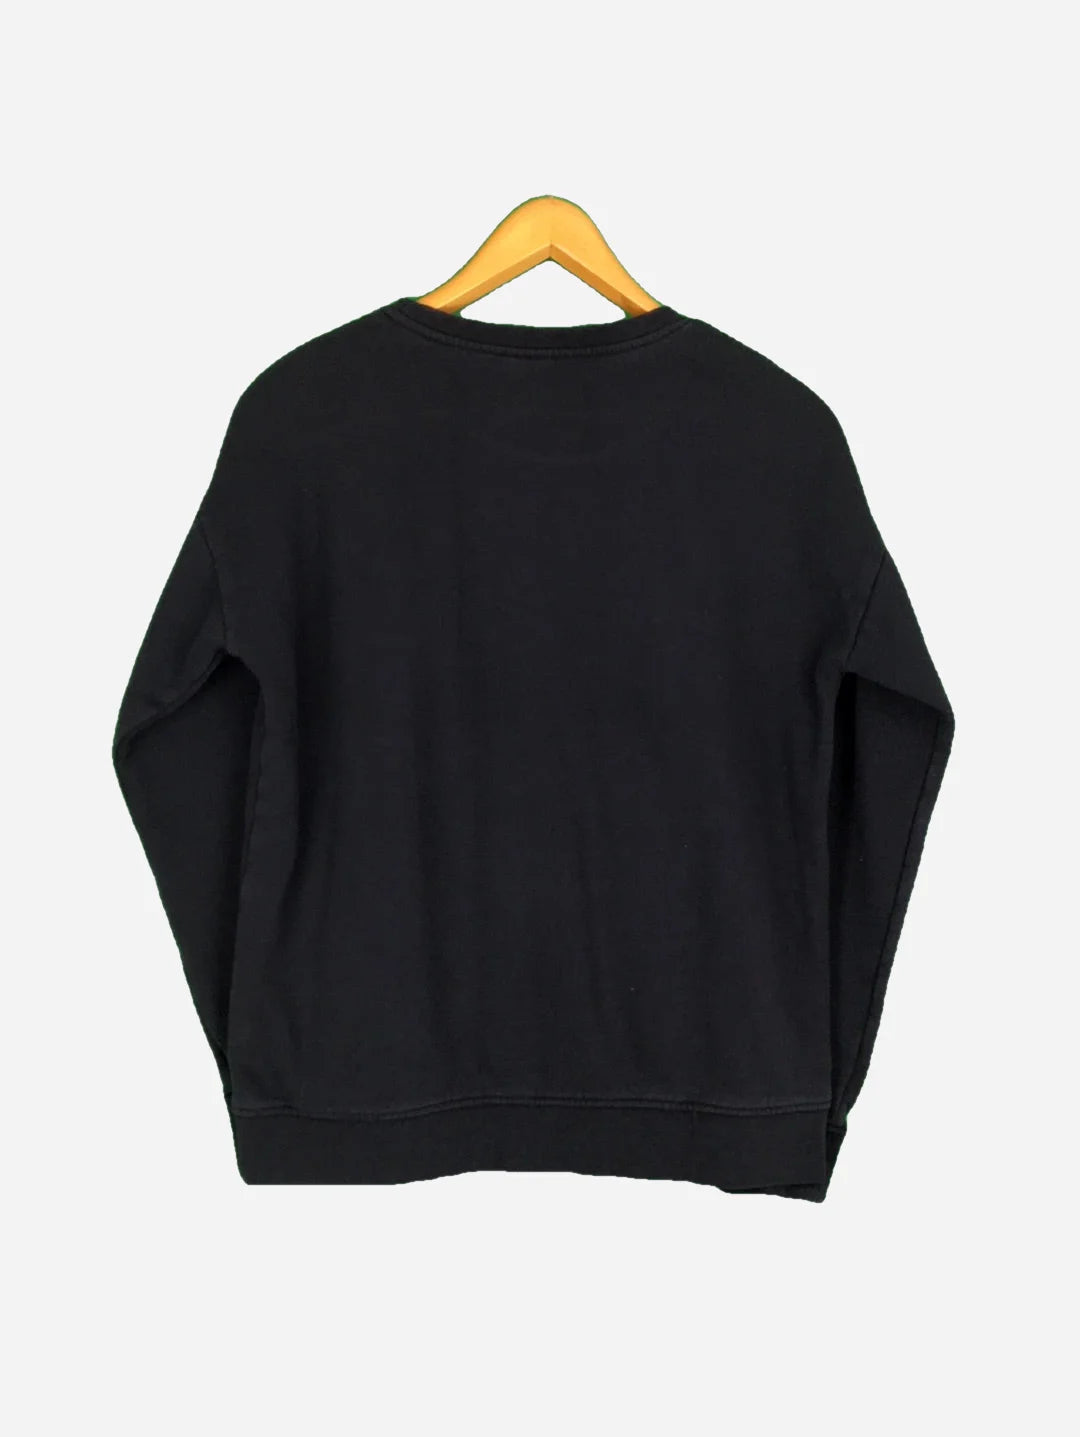 Vans Sweater (S)